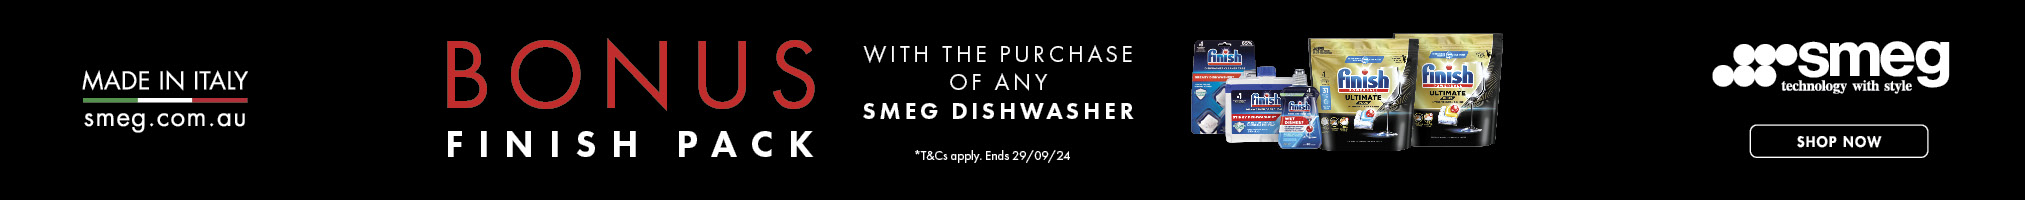 Bonus Finish Pack Valued At $134 With The Purchase Of Any Smeg Dishwasher*